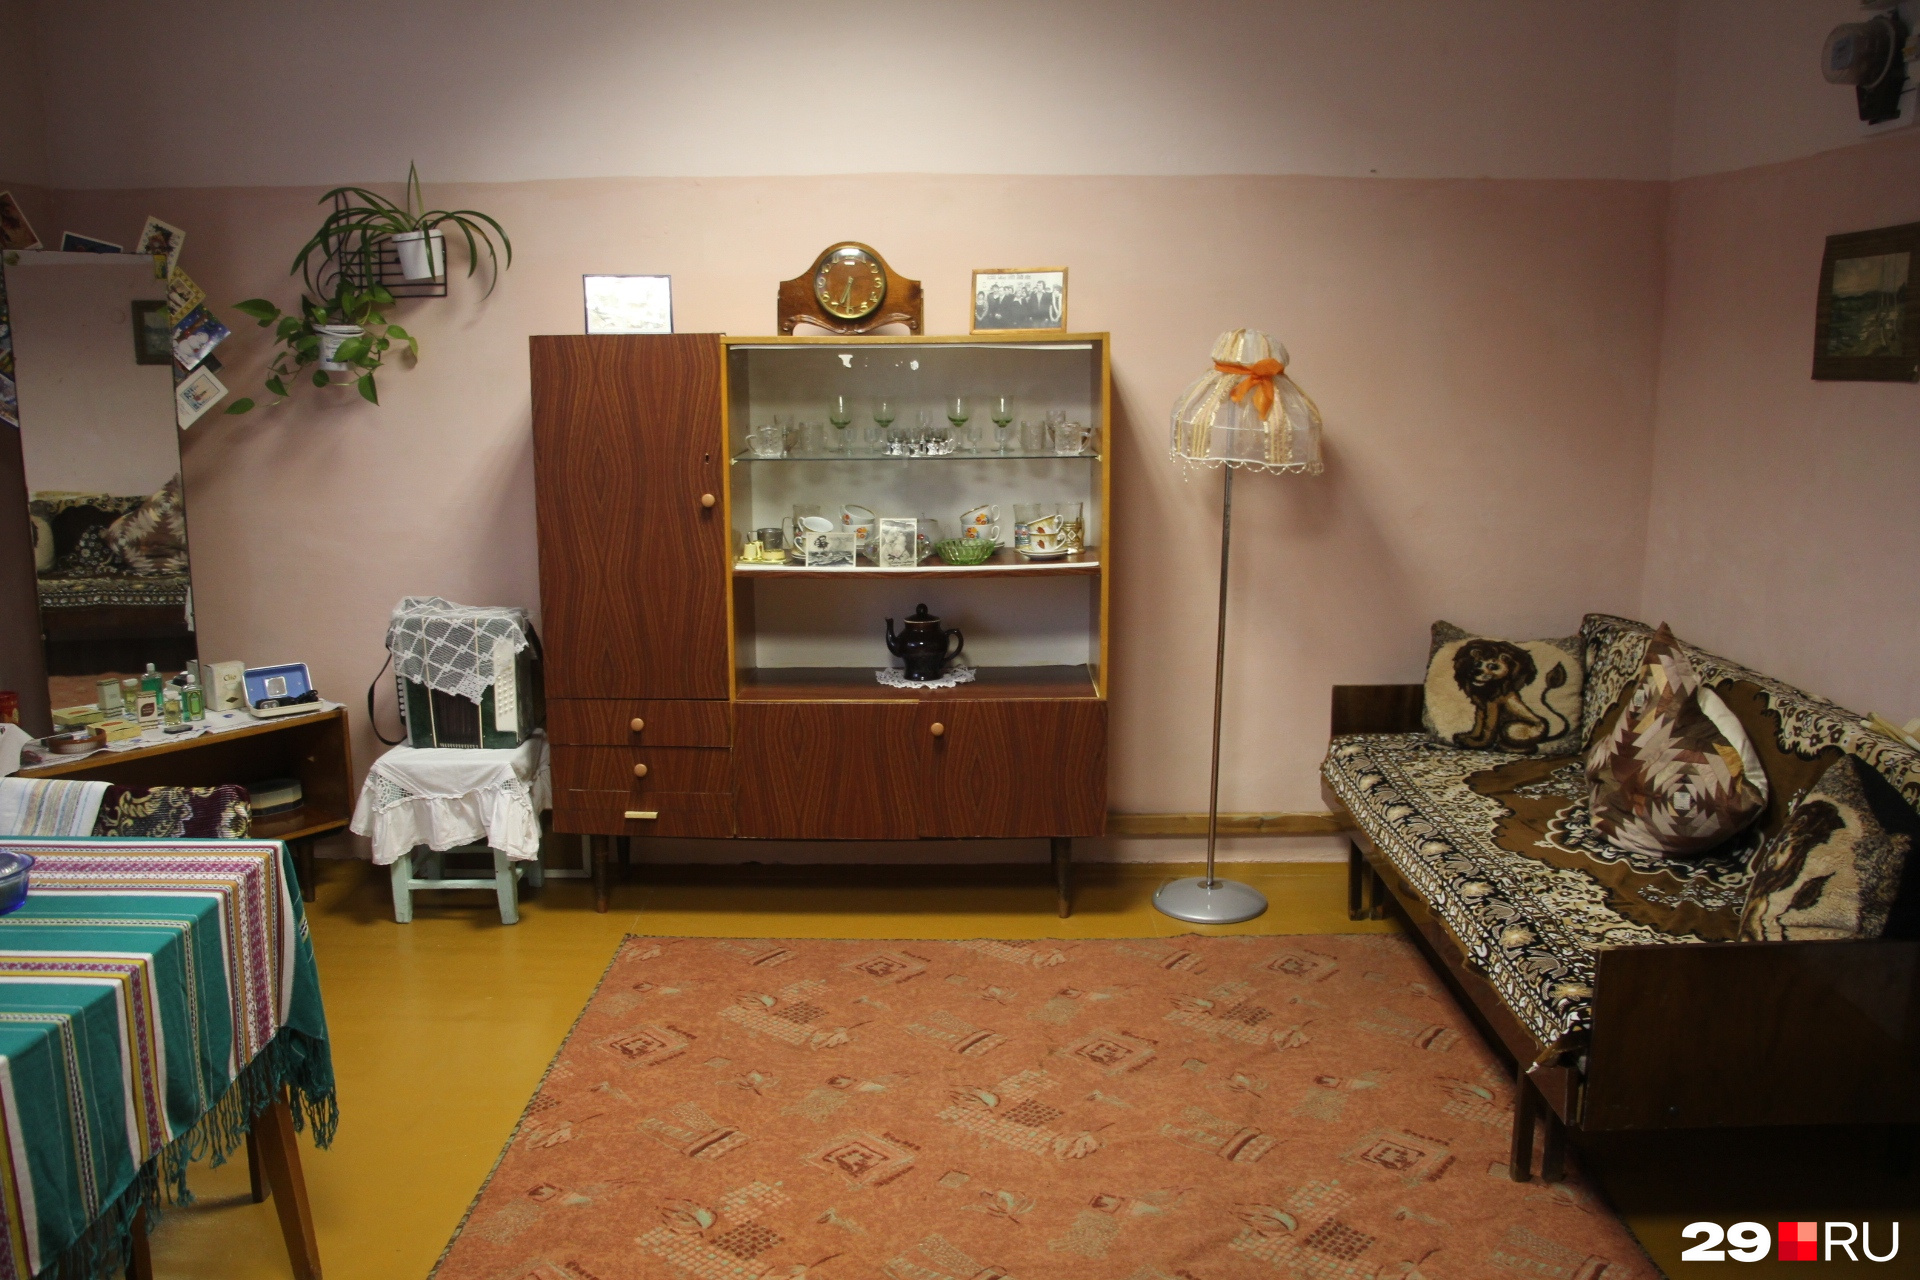 В музее Ластолы воспроизведена типичная советская квартира